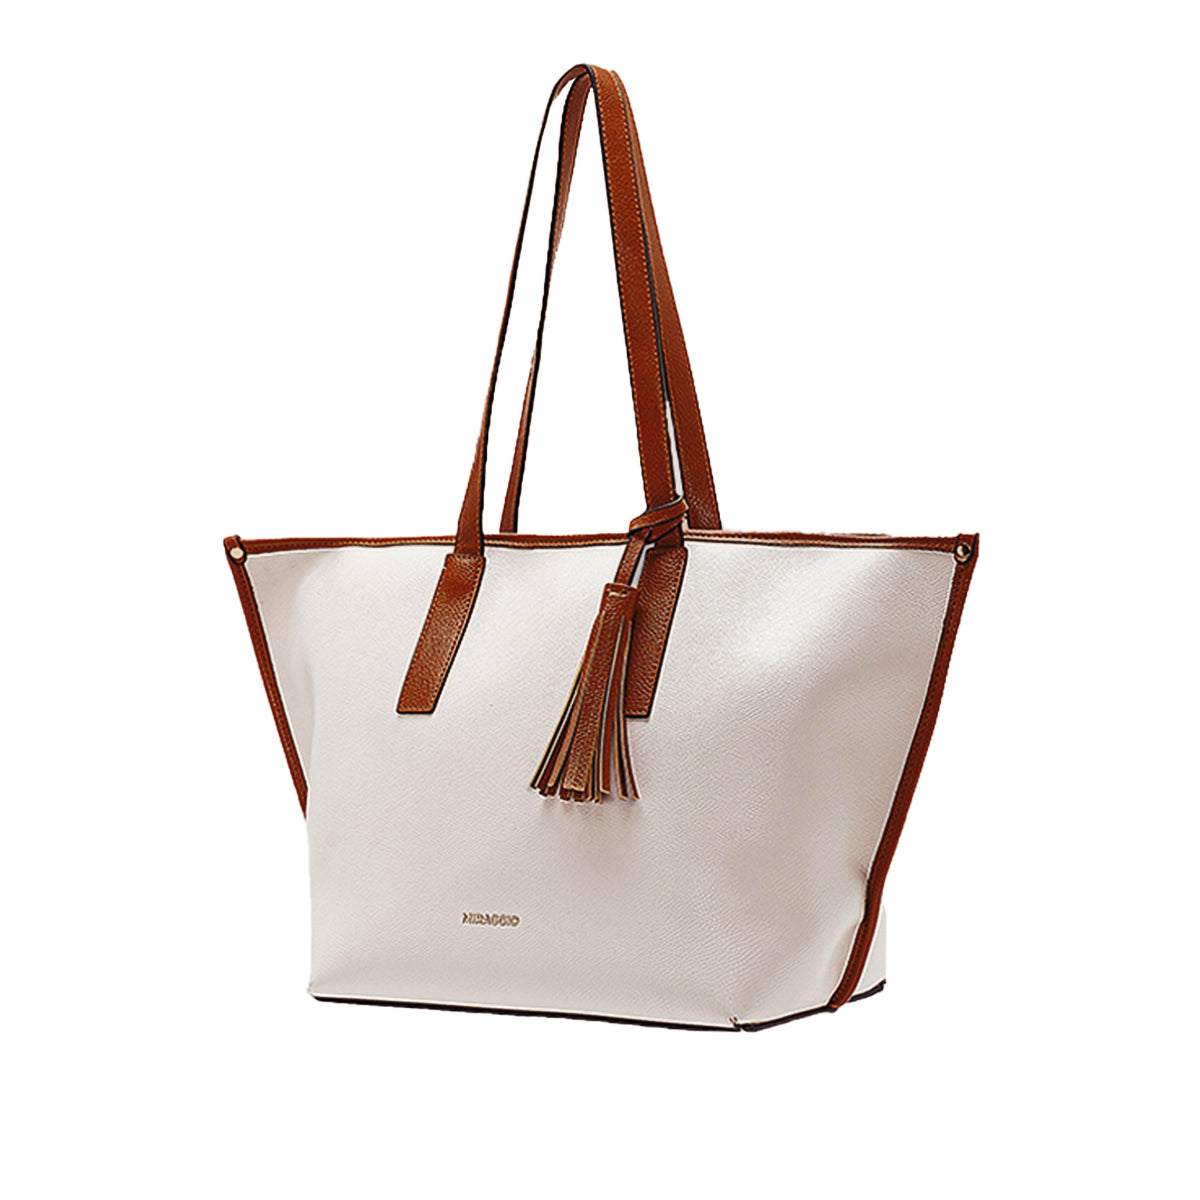 Penelope Women's Tote Bag - MIRAGGIO #color_white-brown